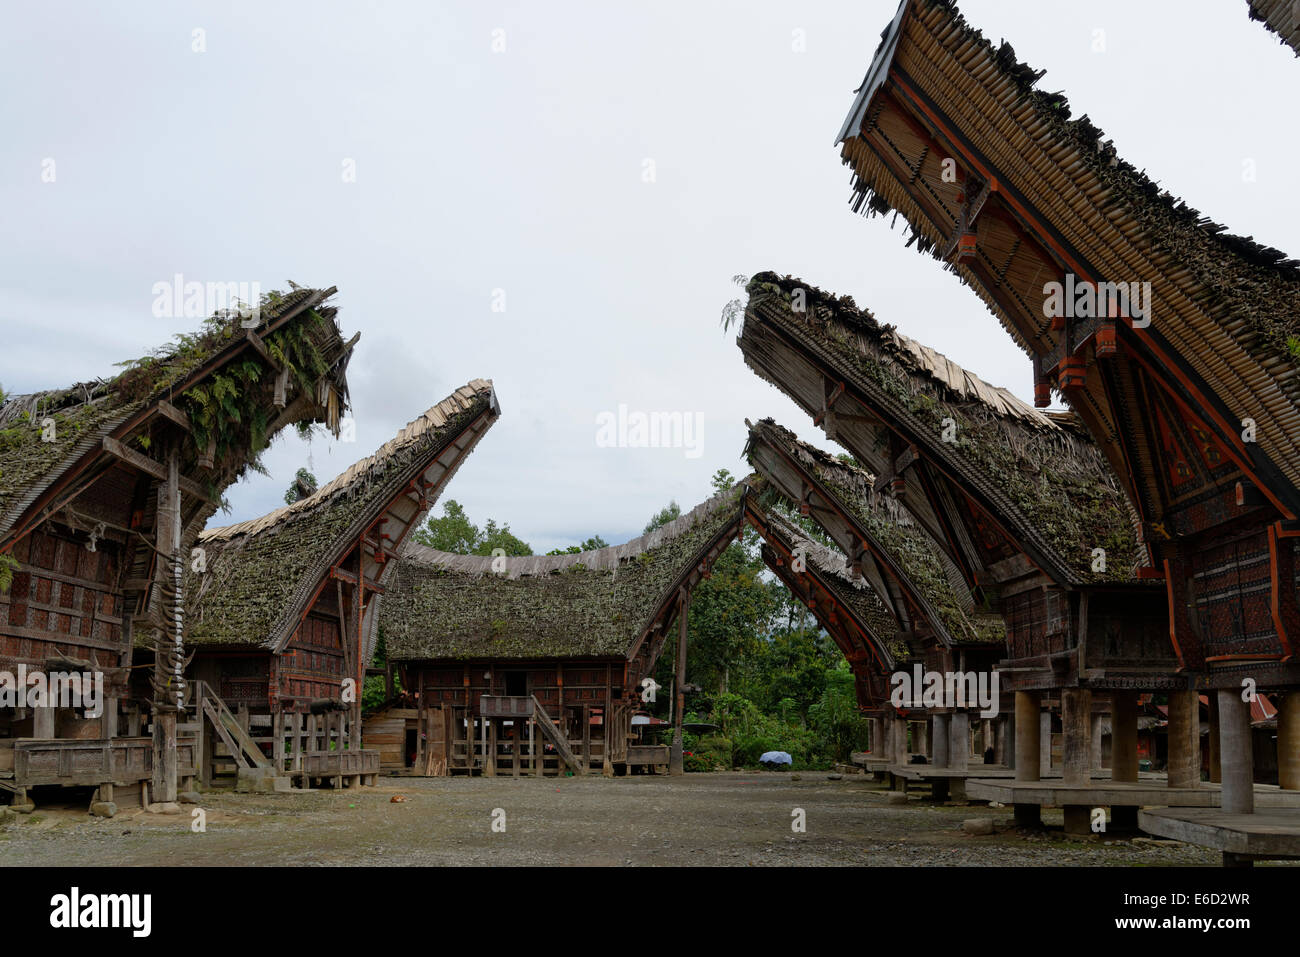 Maisons de stockage traditionnelles tongkonan, village de palawa, Sulawesi Selatan, rantepao, Indonésie Banque D'Images